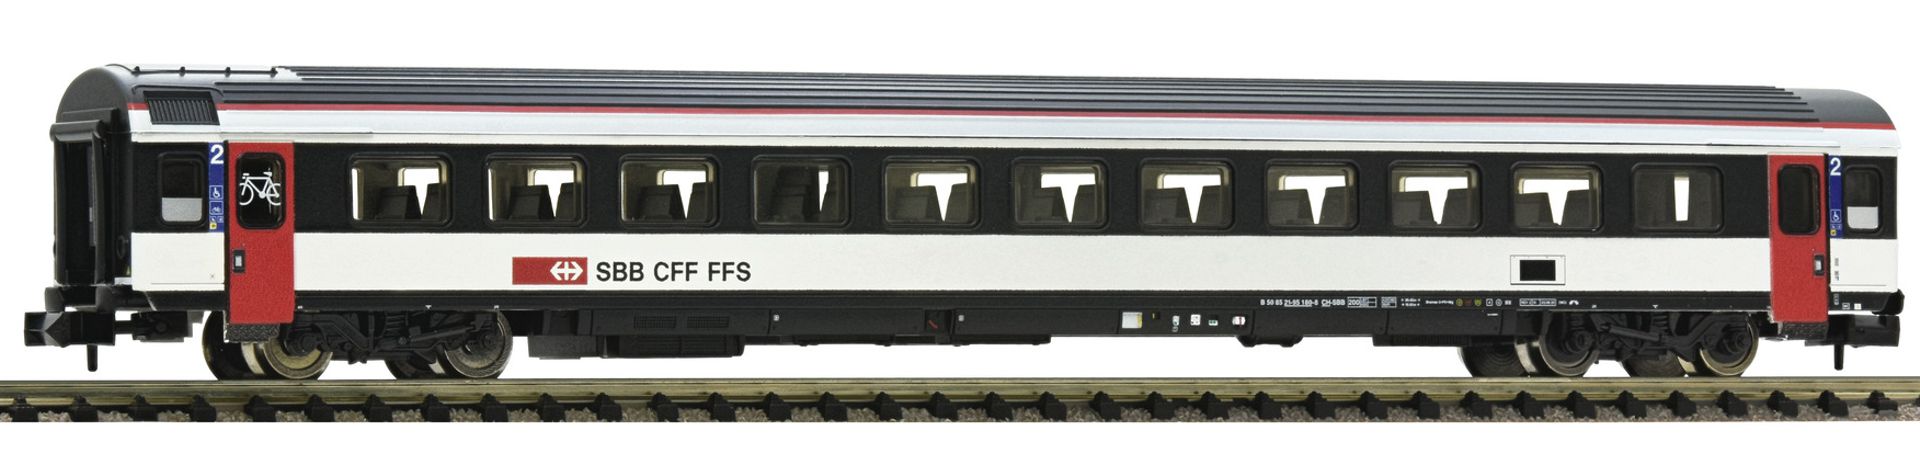 Fleischmann 6260017 - Personenwagen EW-IV, 2. Klasse, SBB, Ep.VI